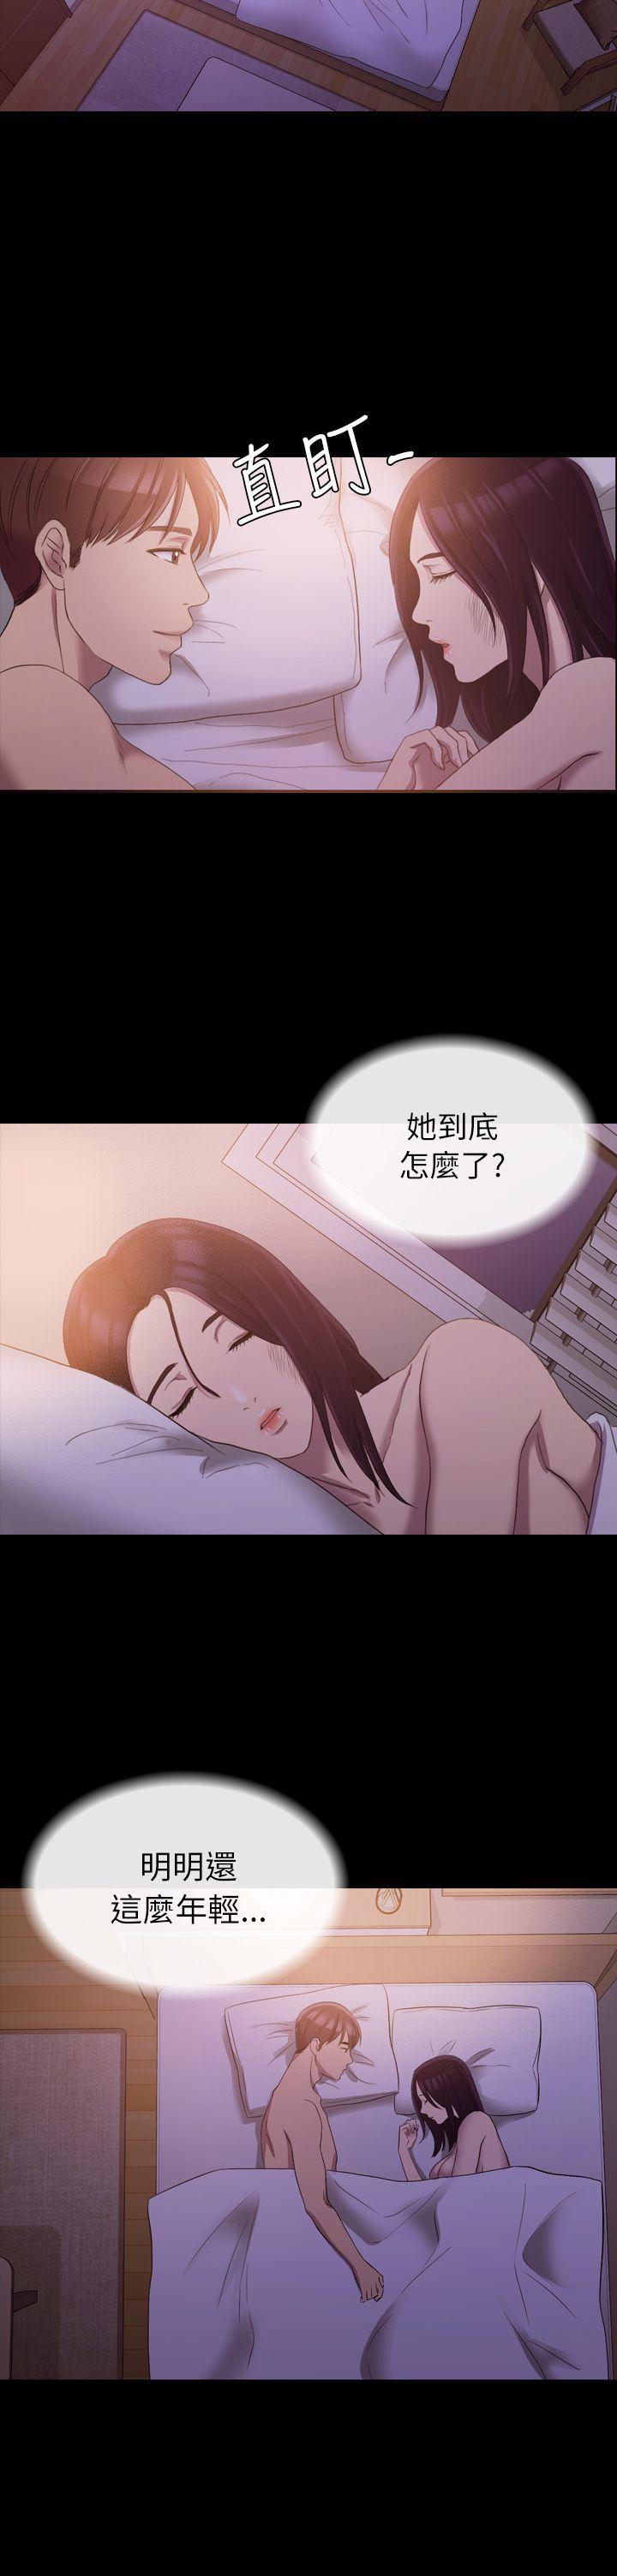 韩国污漫画 初戀陷阱 第12话 30